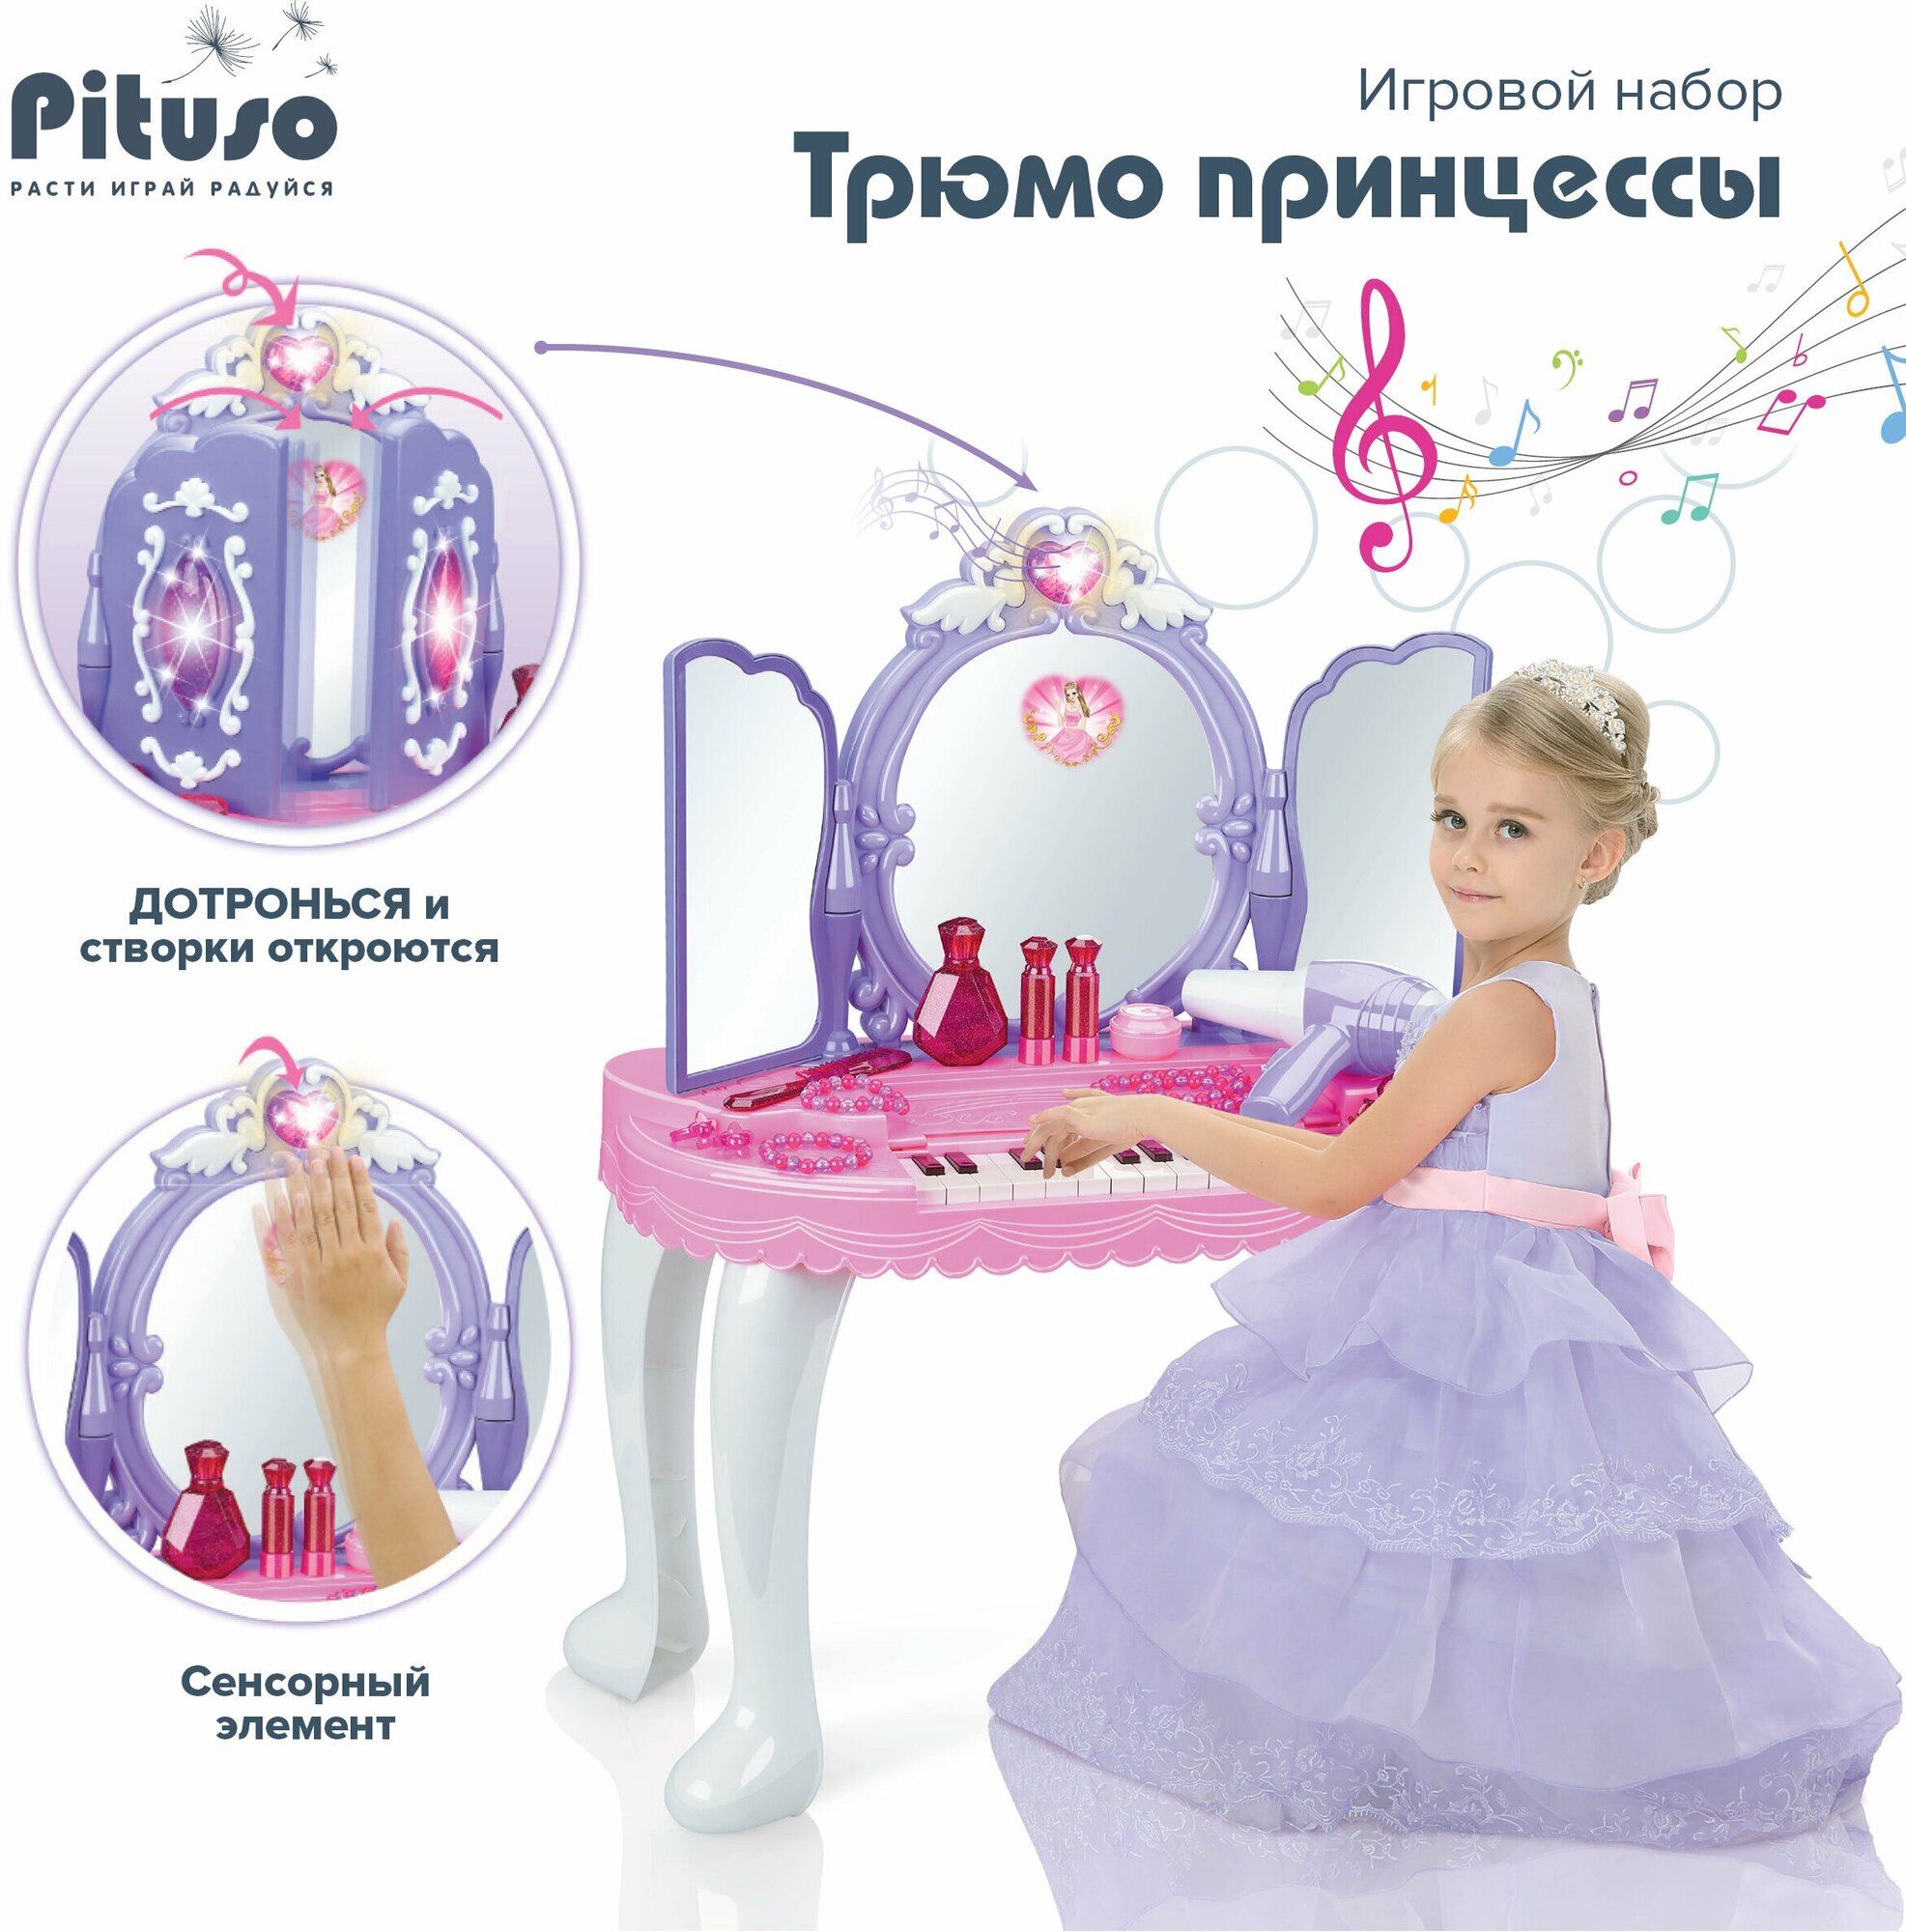 Игровой набор Pituso Трюмо принцессы с пуфиком